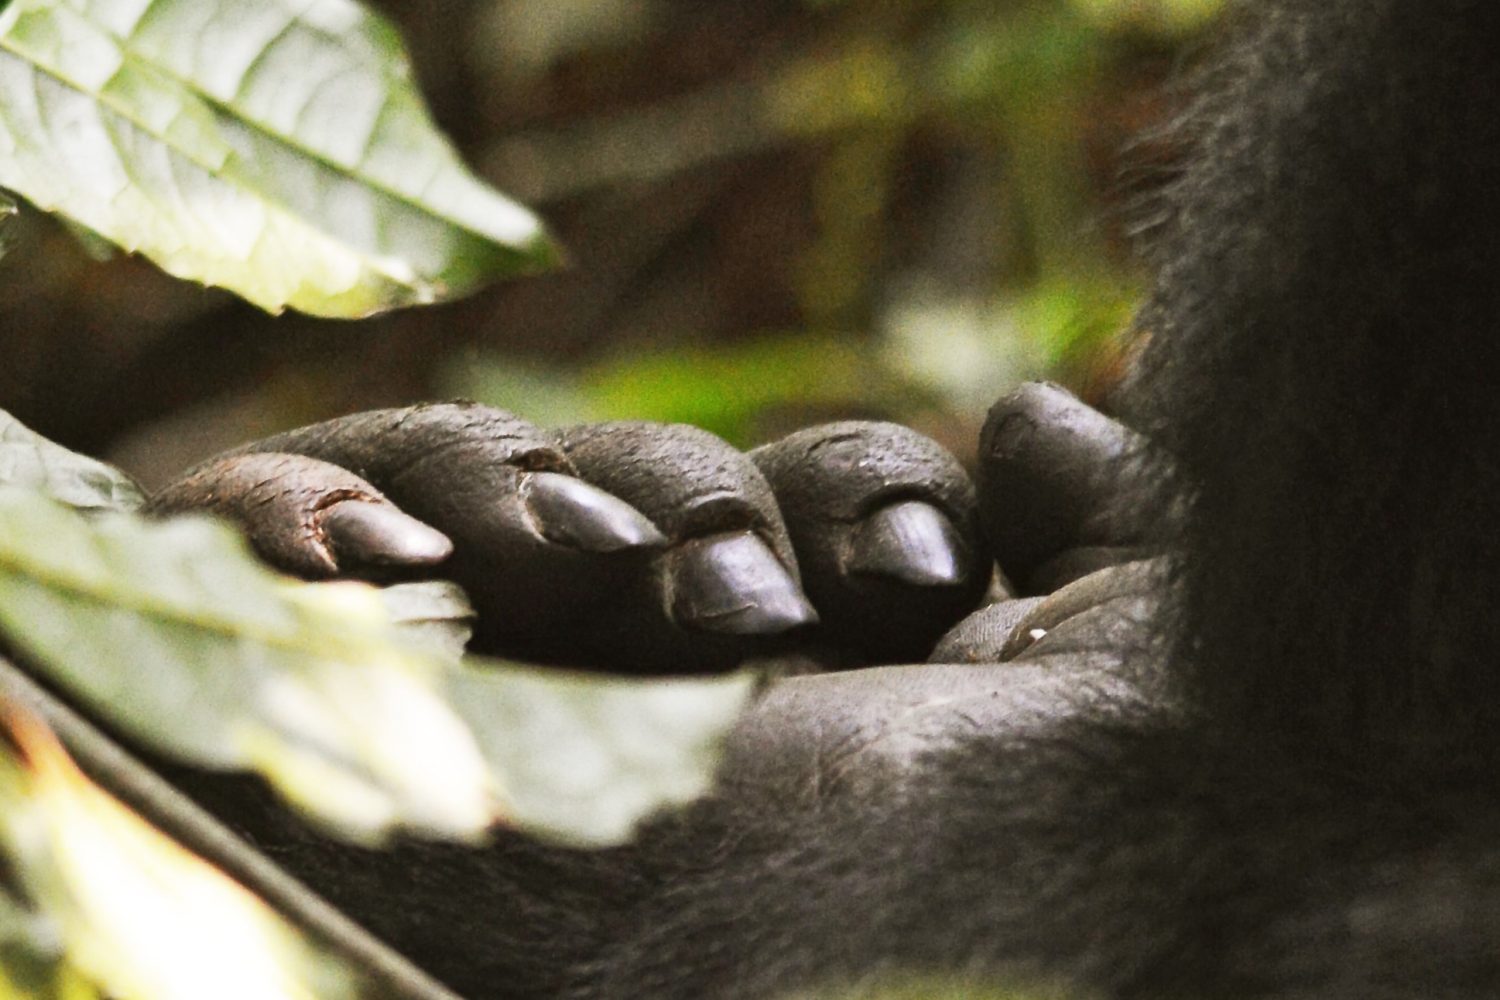 Gorilla trekking in Uganda Vs Rwanda